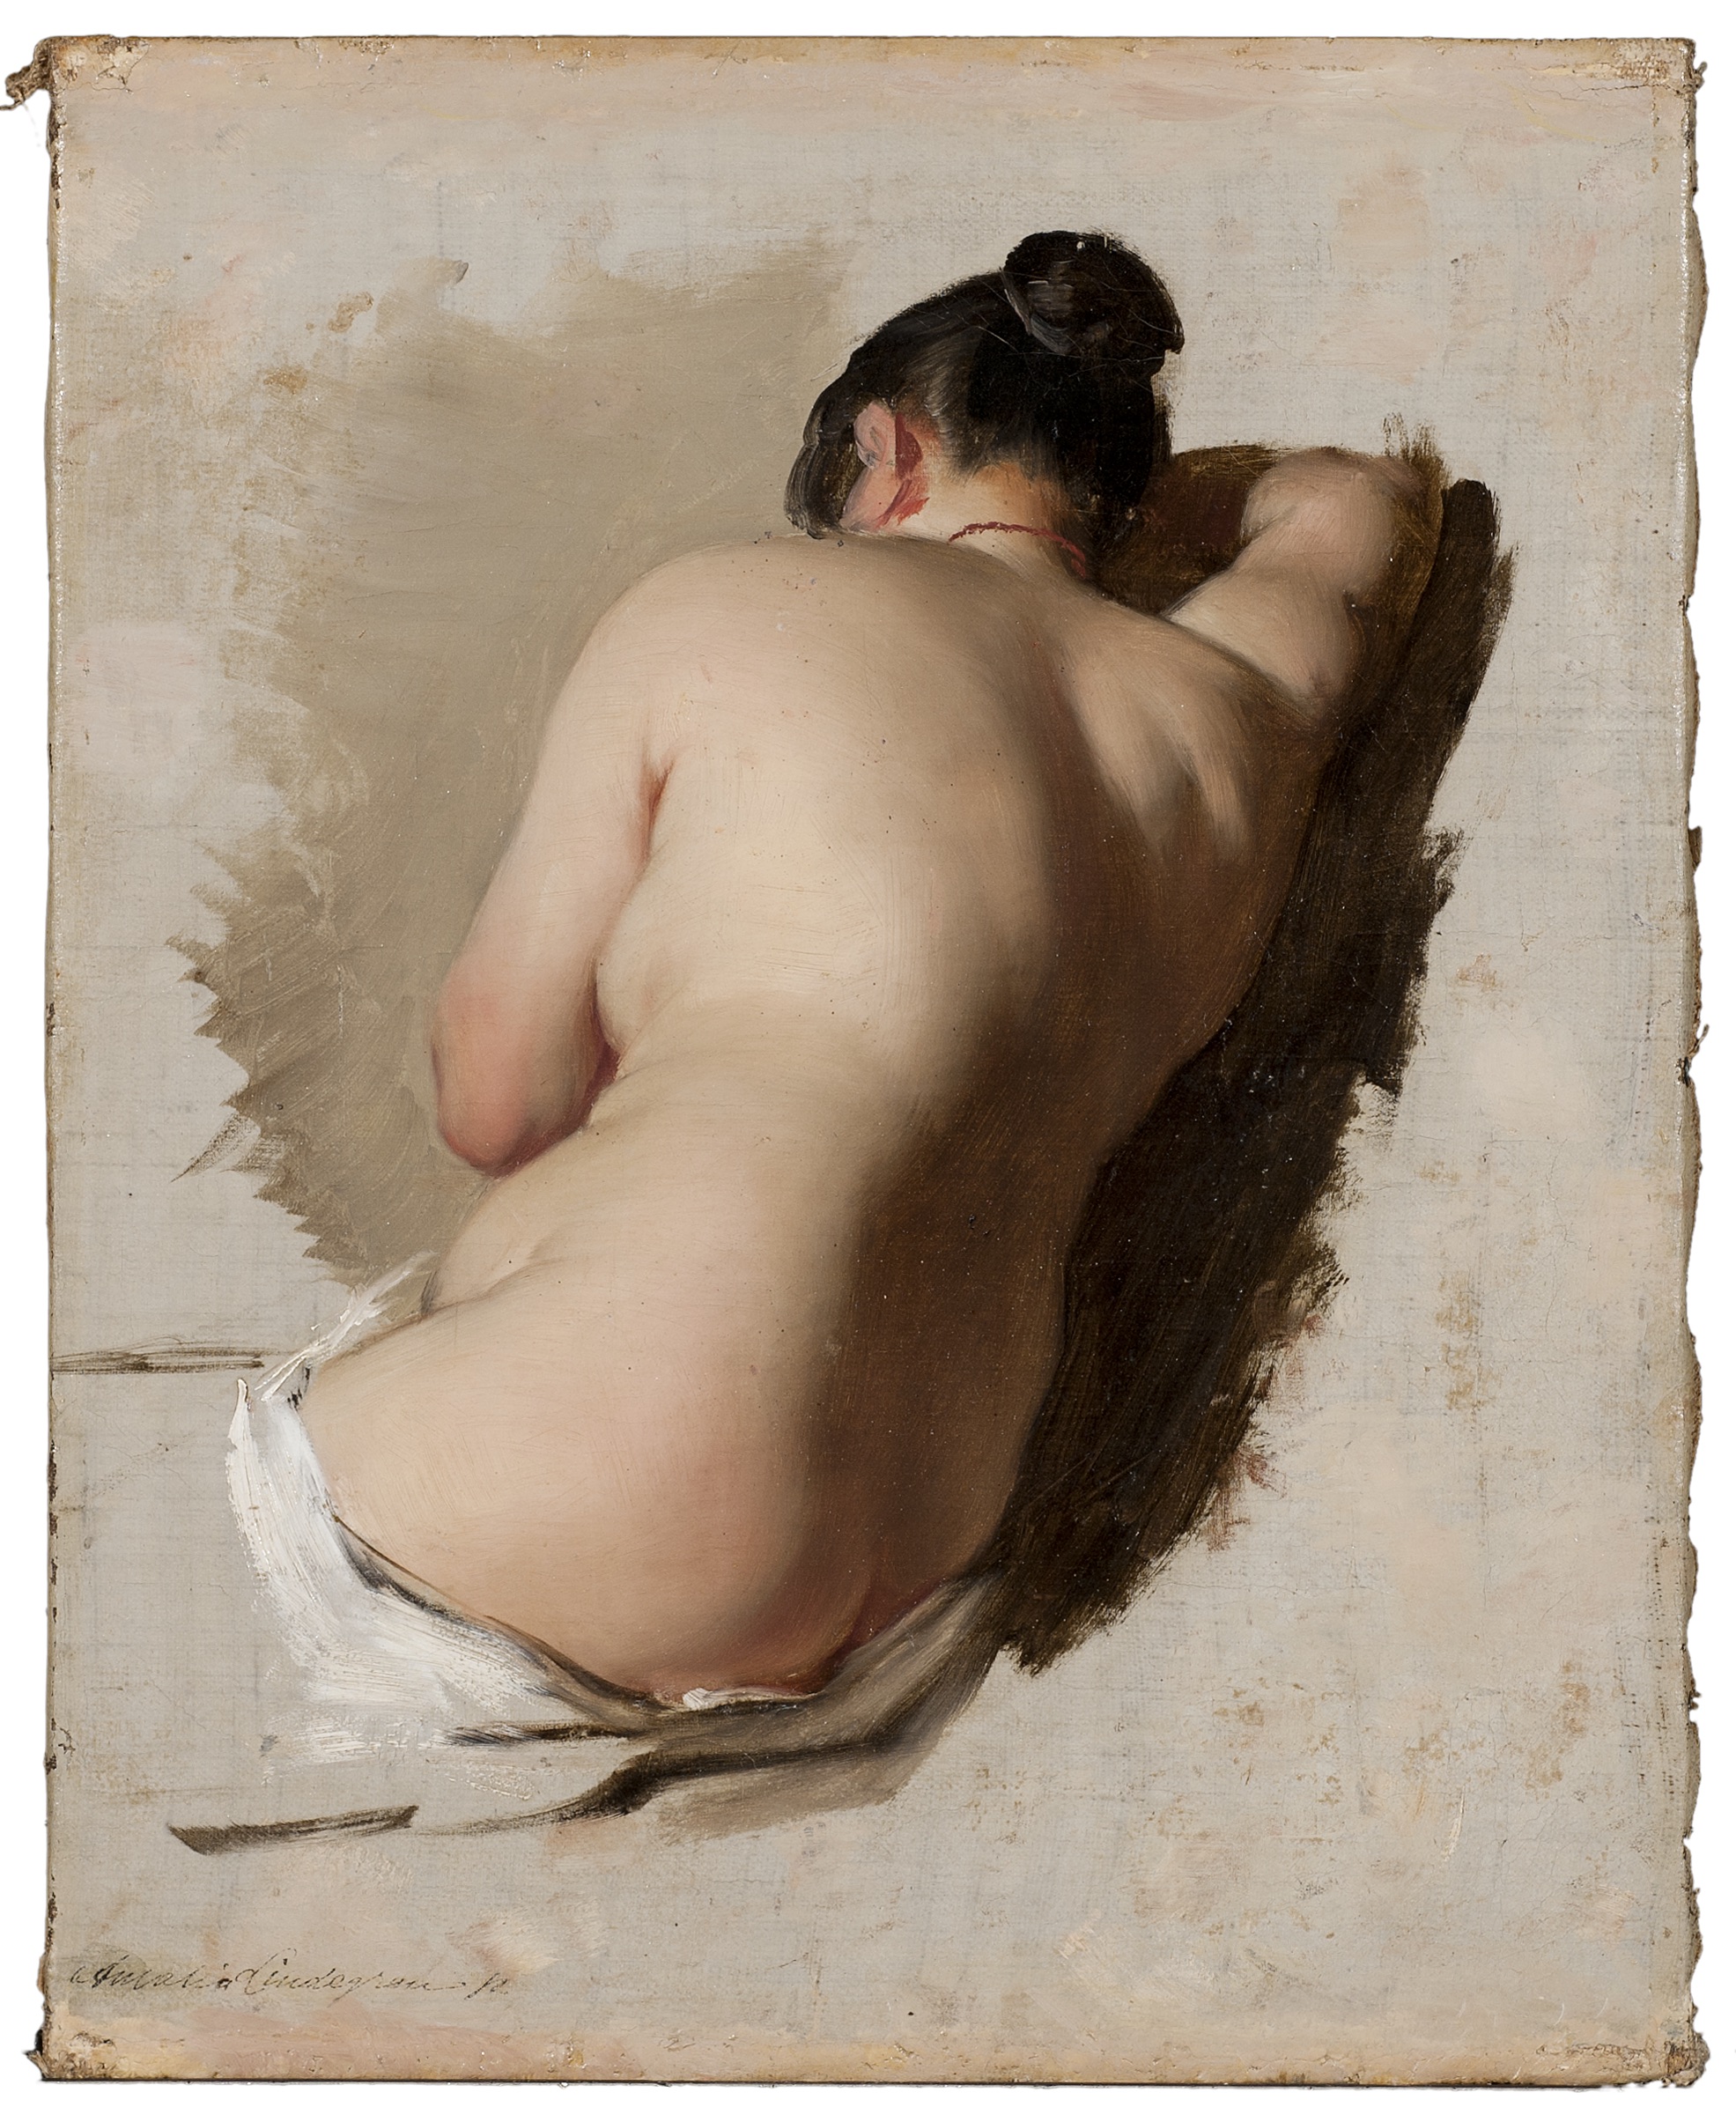 Студија о акту by Amalia Lindegren - 1850. - 33,5 x 26,5 cm 